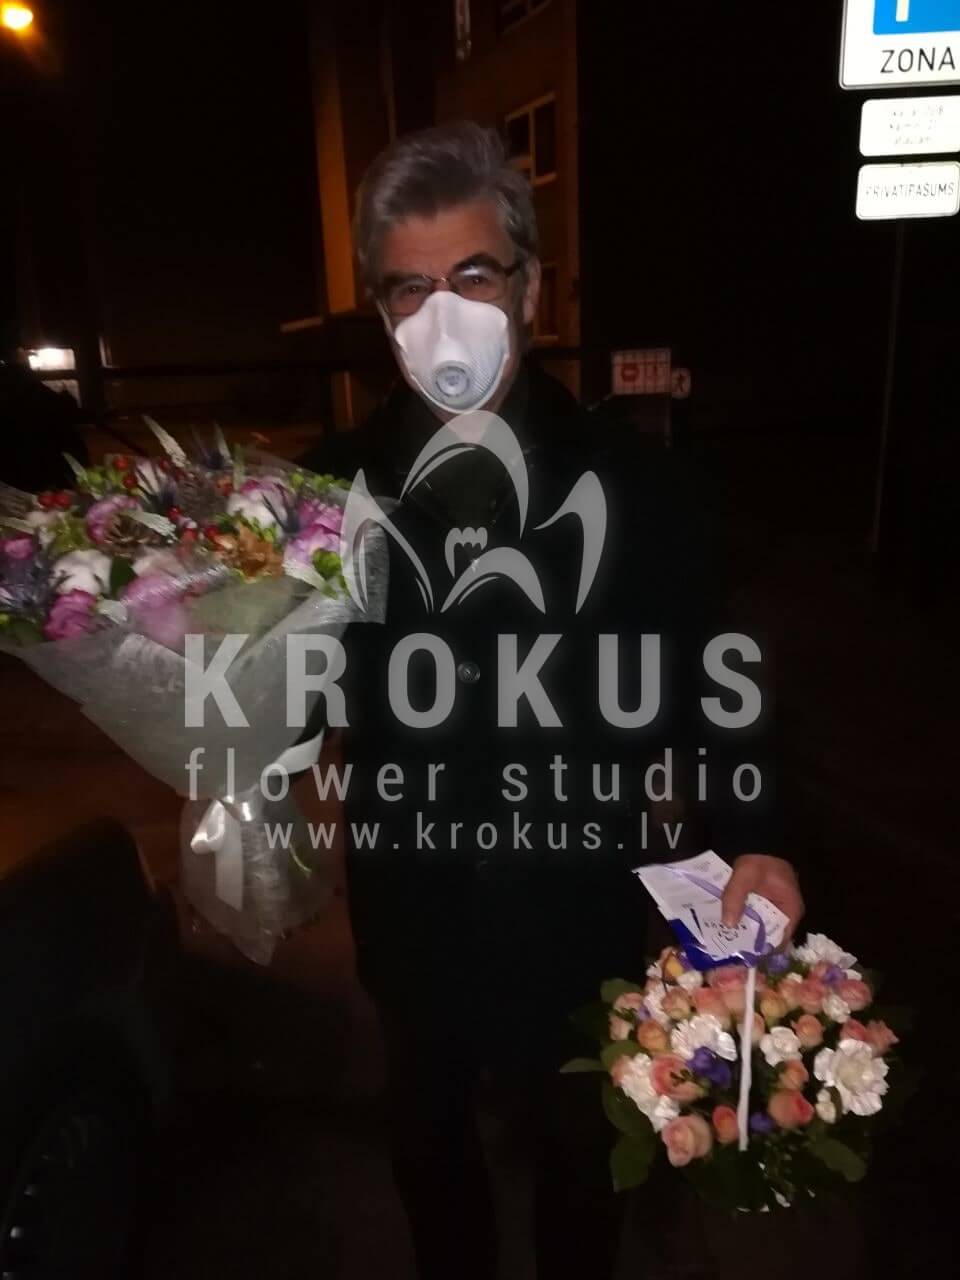 Доставка цветов в город Рига (кустовые розырозовые розыгвоздикиваксфлауэрстатицасалал)